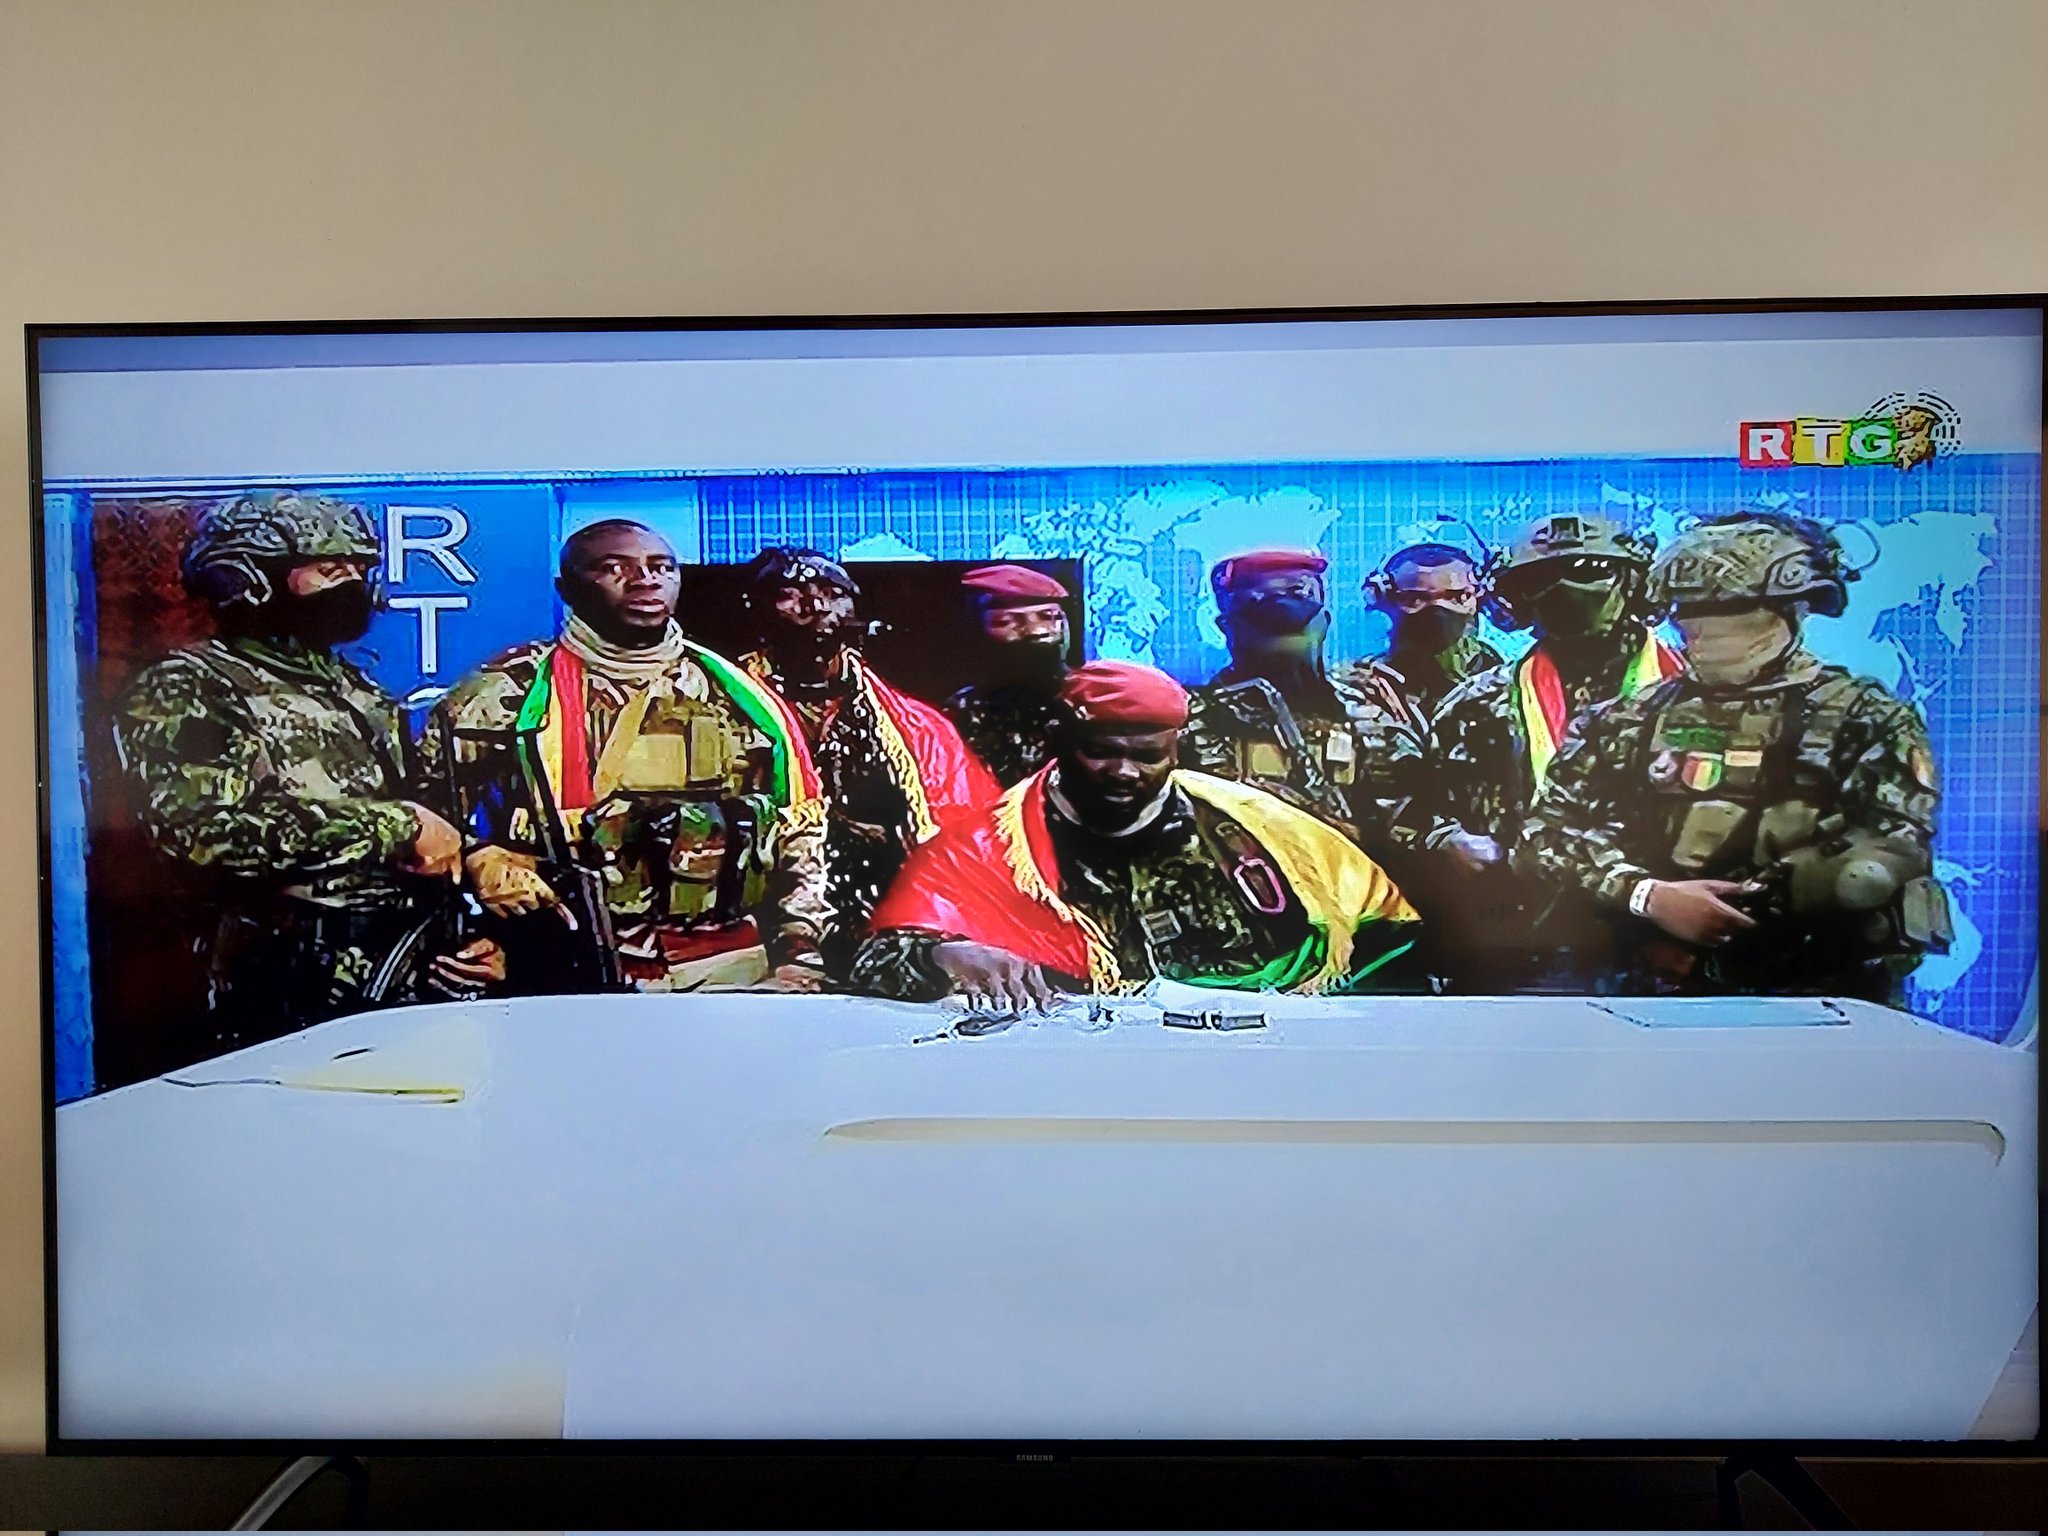 Đại tá Doumbouya (ngồi giữa) phát biểu trên truyền hình quốc gia Guinea. Ảnh: Twitter/Bate Felix.